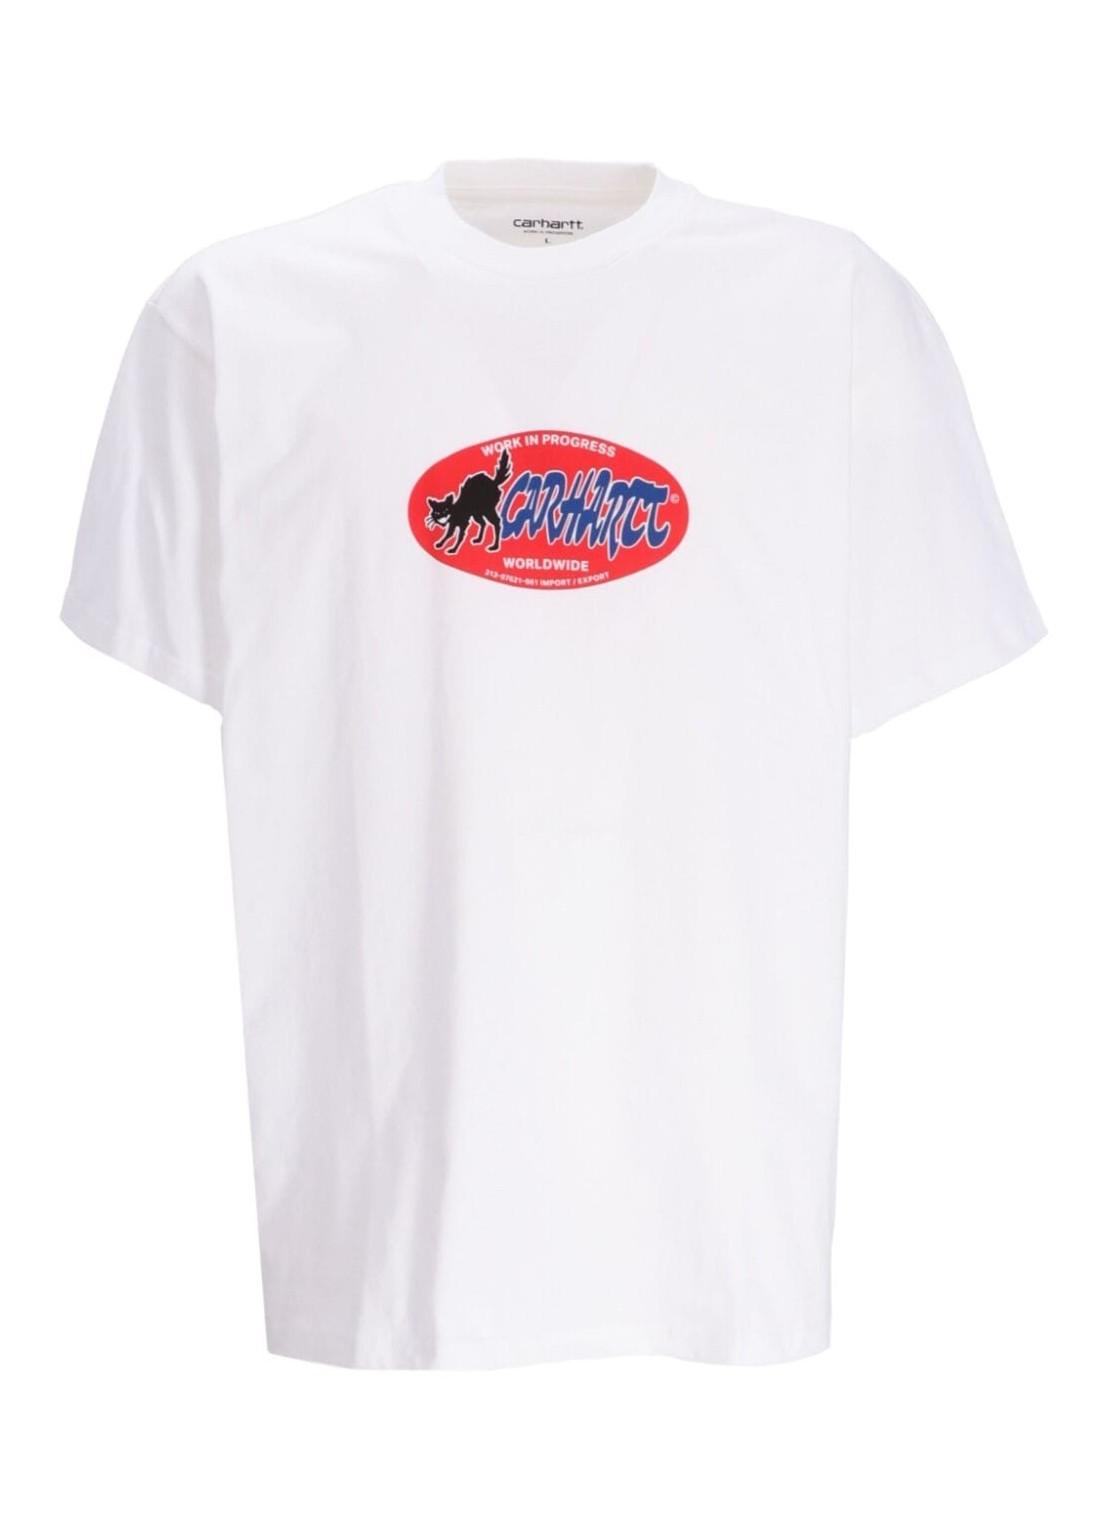 Camiseta carhartt t-shirt man s/s cat sticker t-shirt i032886 02xx talla S
 